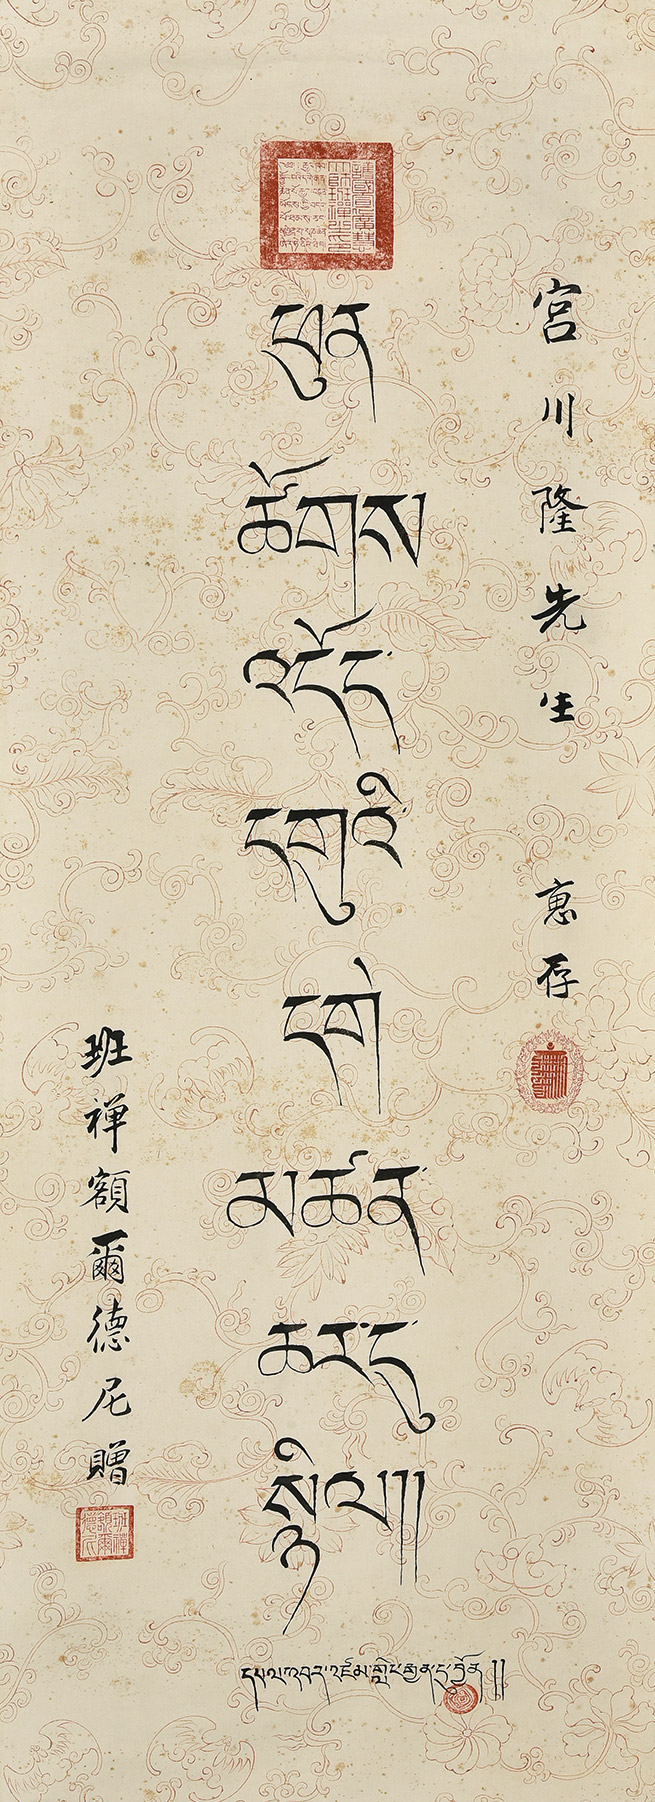 藏文书法简介图片